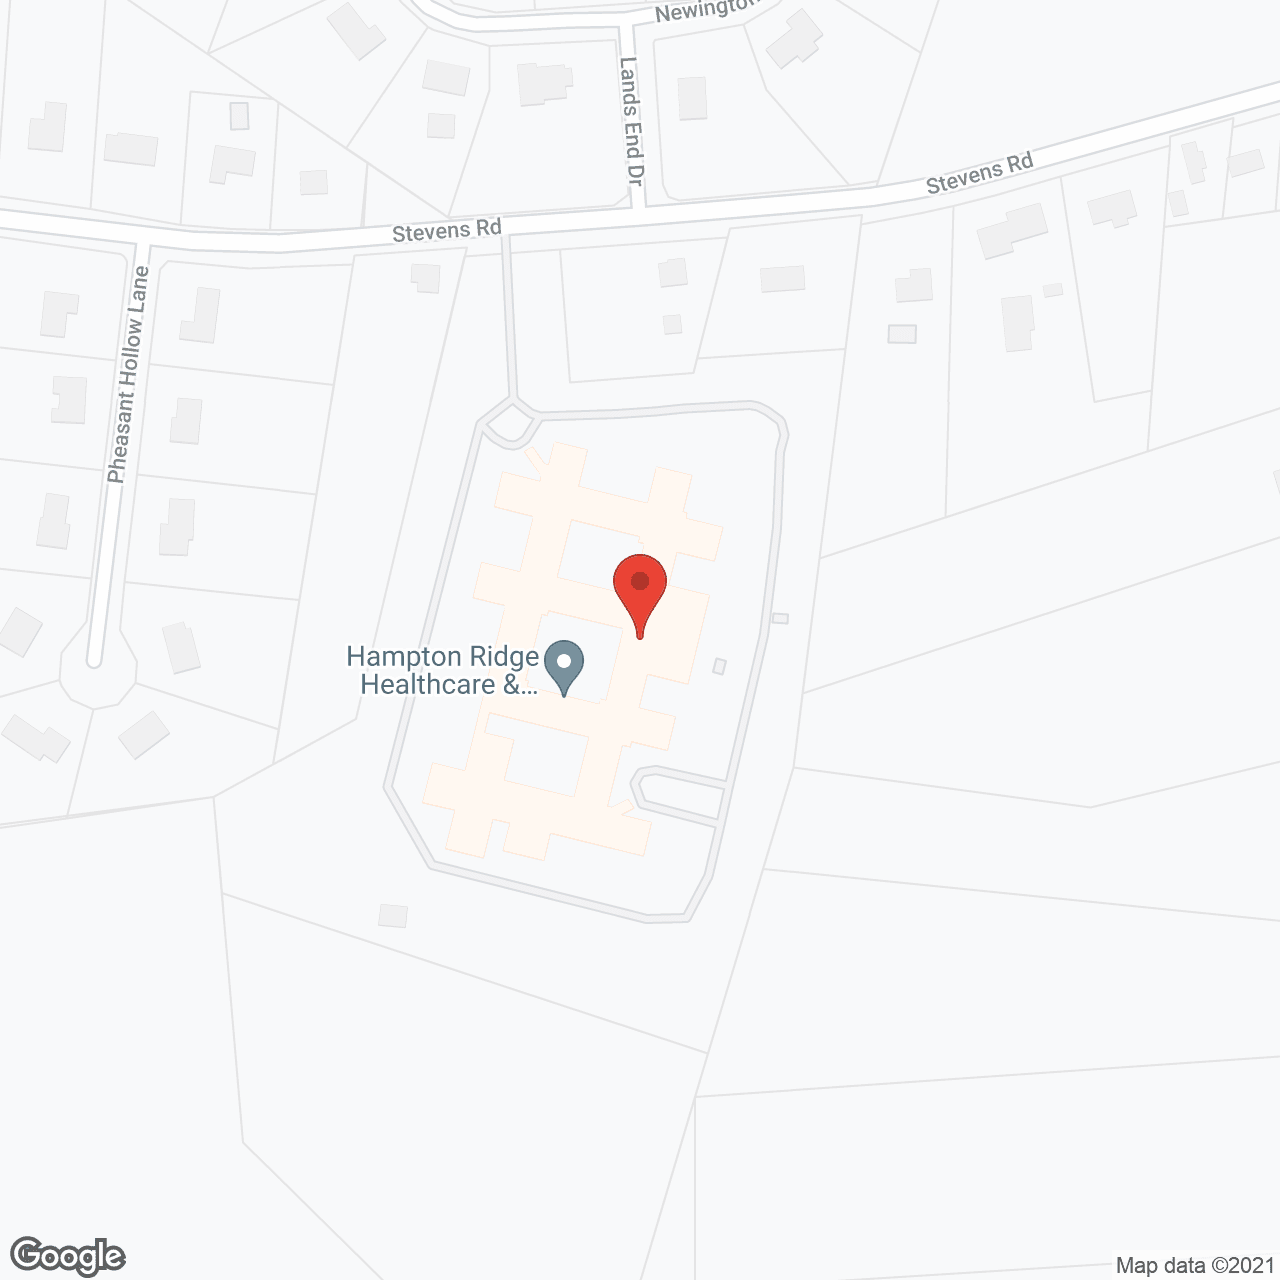 Hampton Ridge in google map